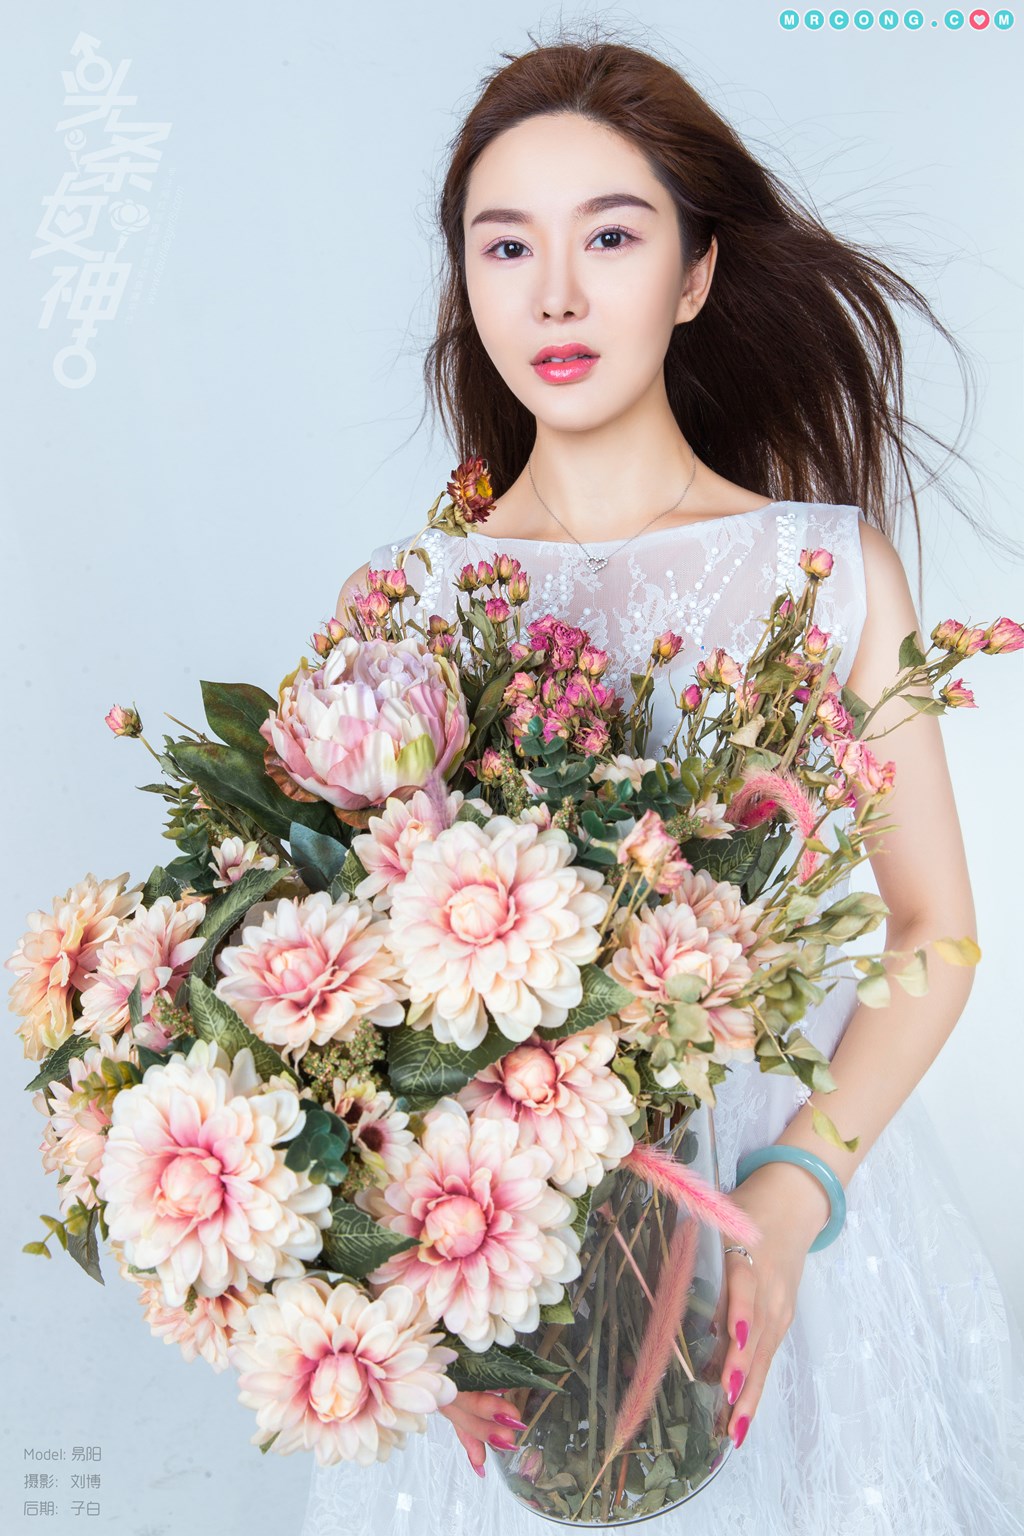 TouTiao 2018-07-27: Model Yi Yang (易 阳) (11 photos) photo 1-6